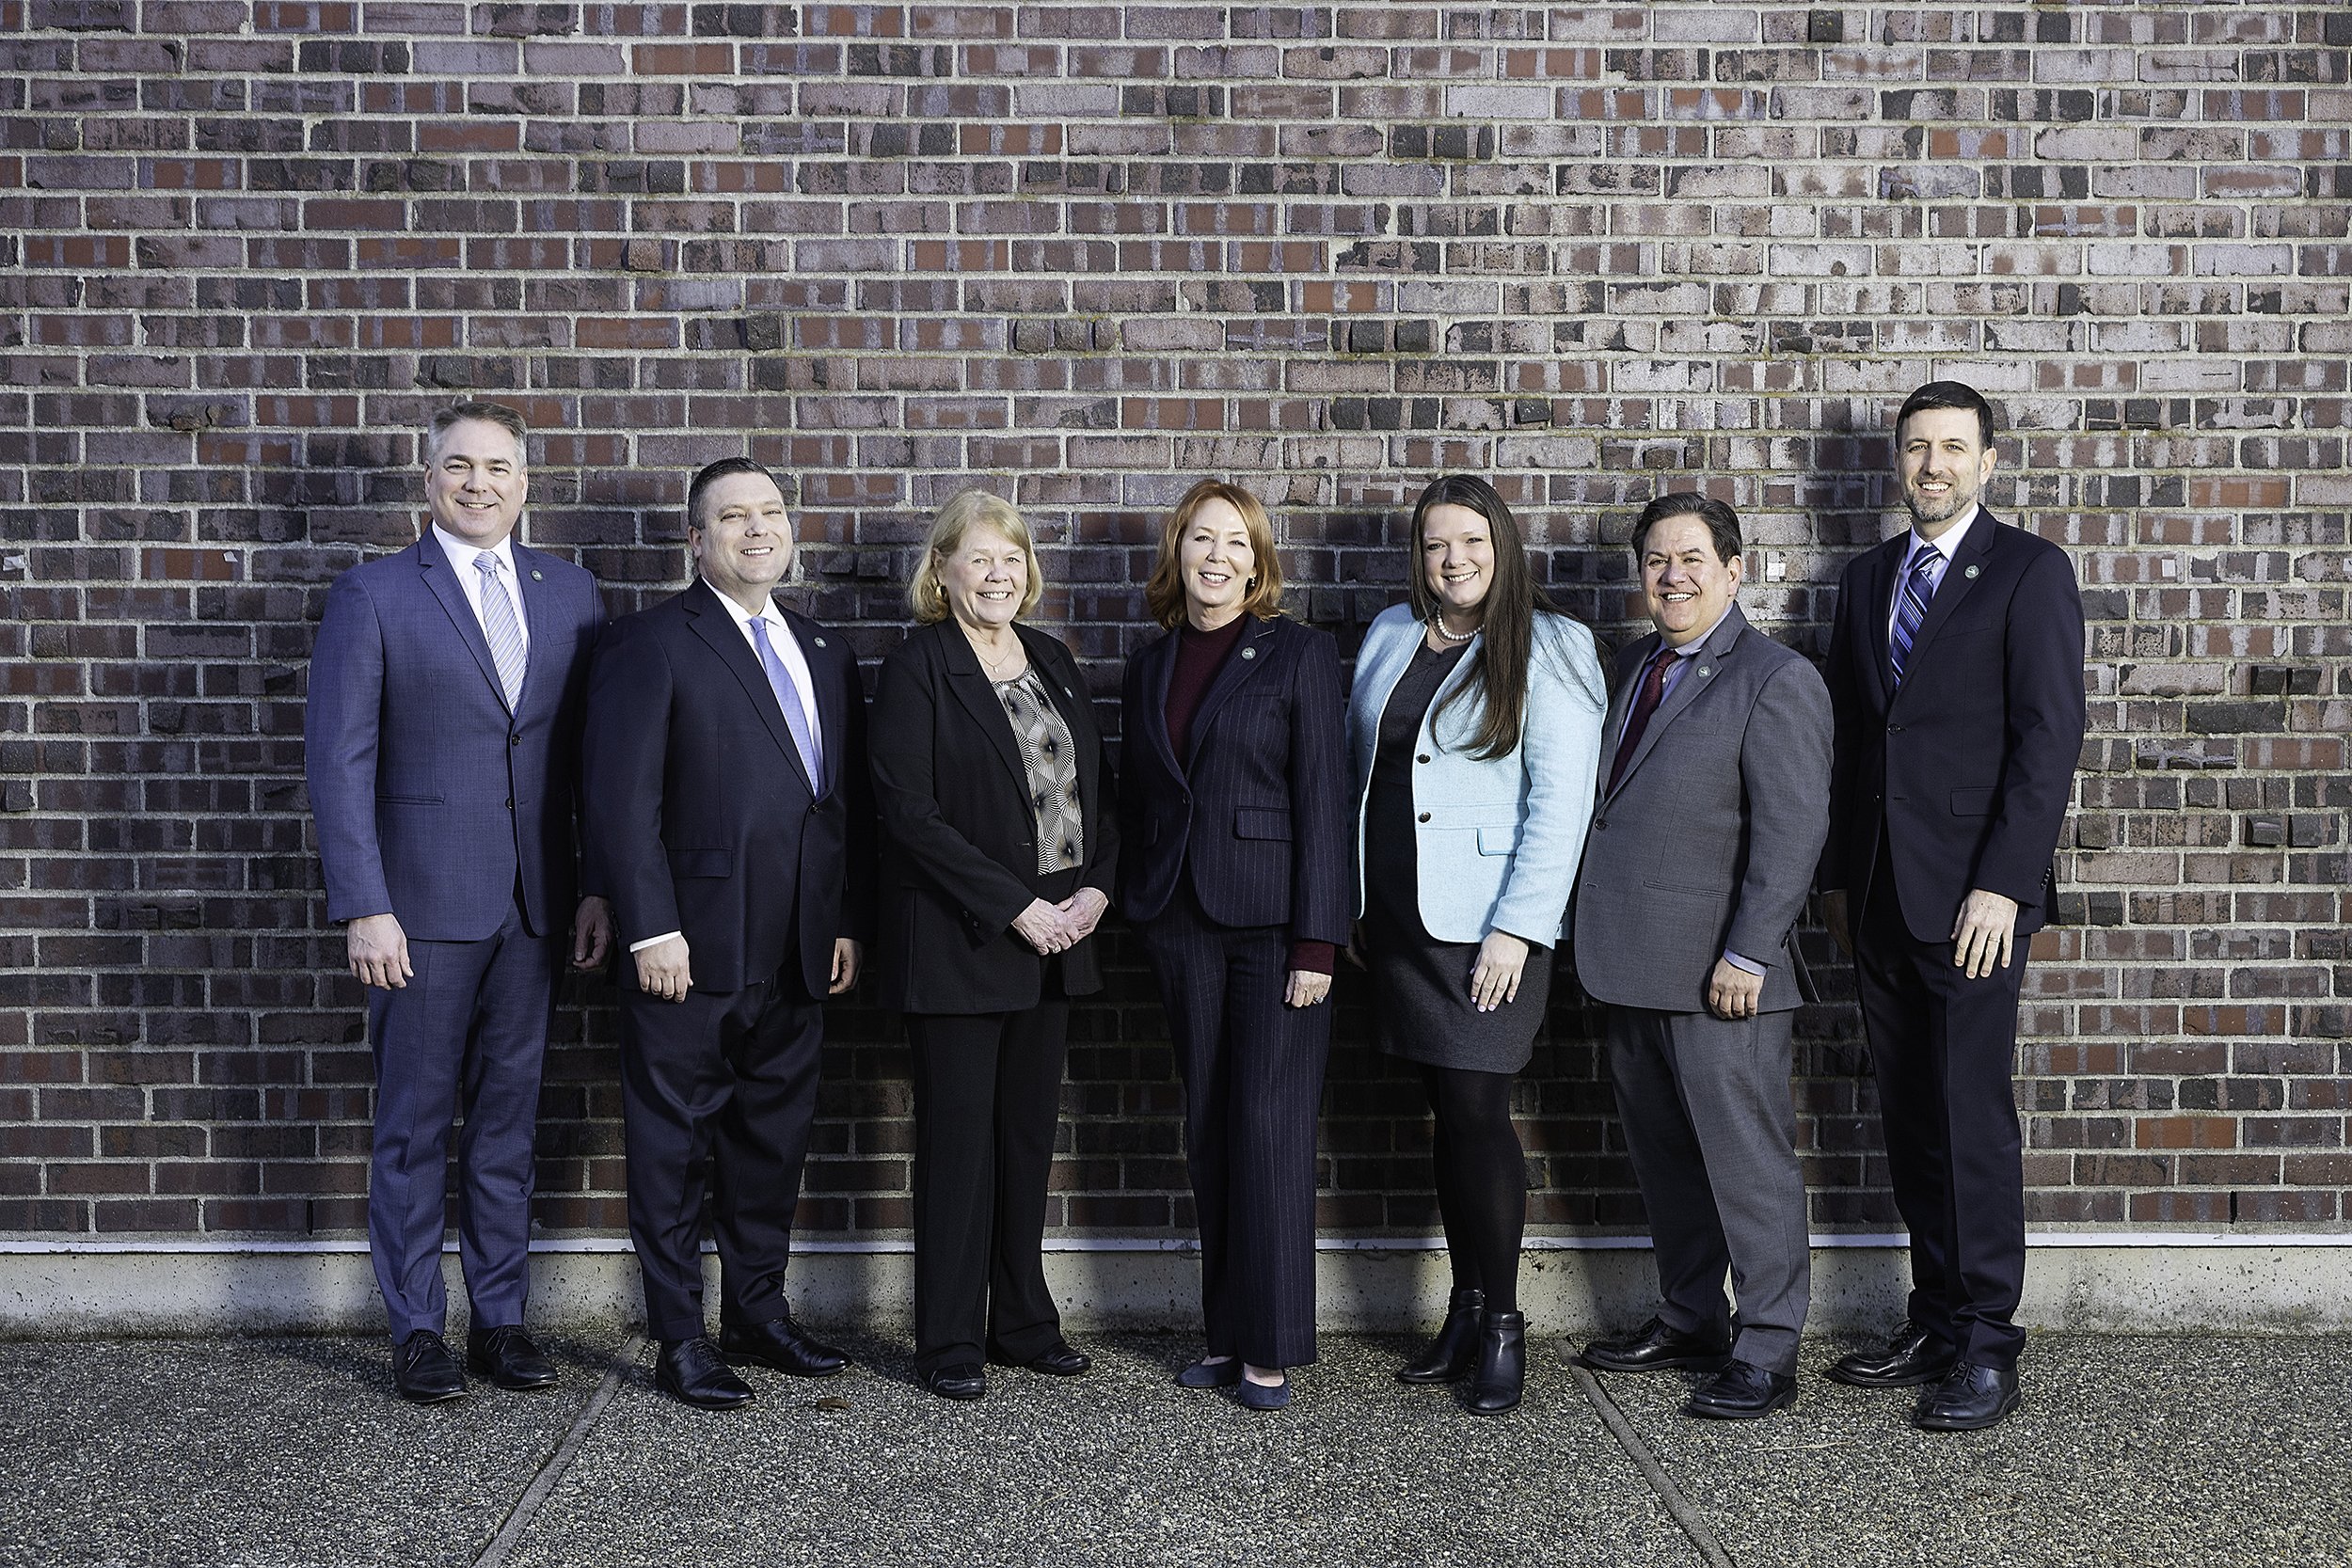  Corporate Team photoshoot in Kirkland Washington 